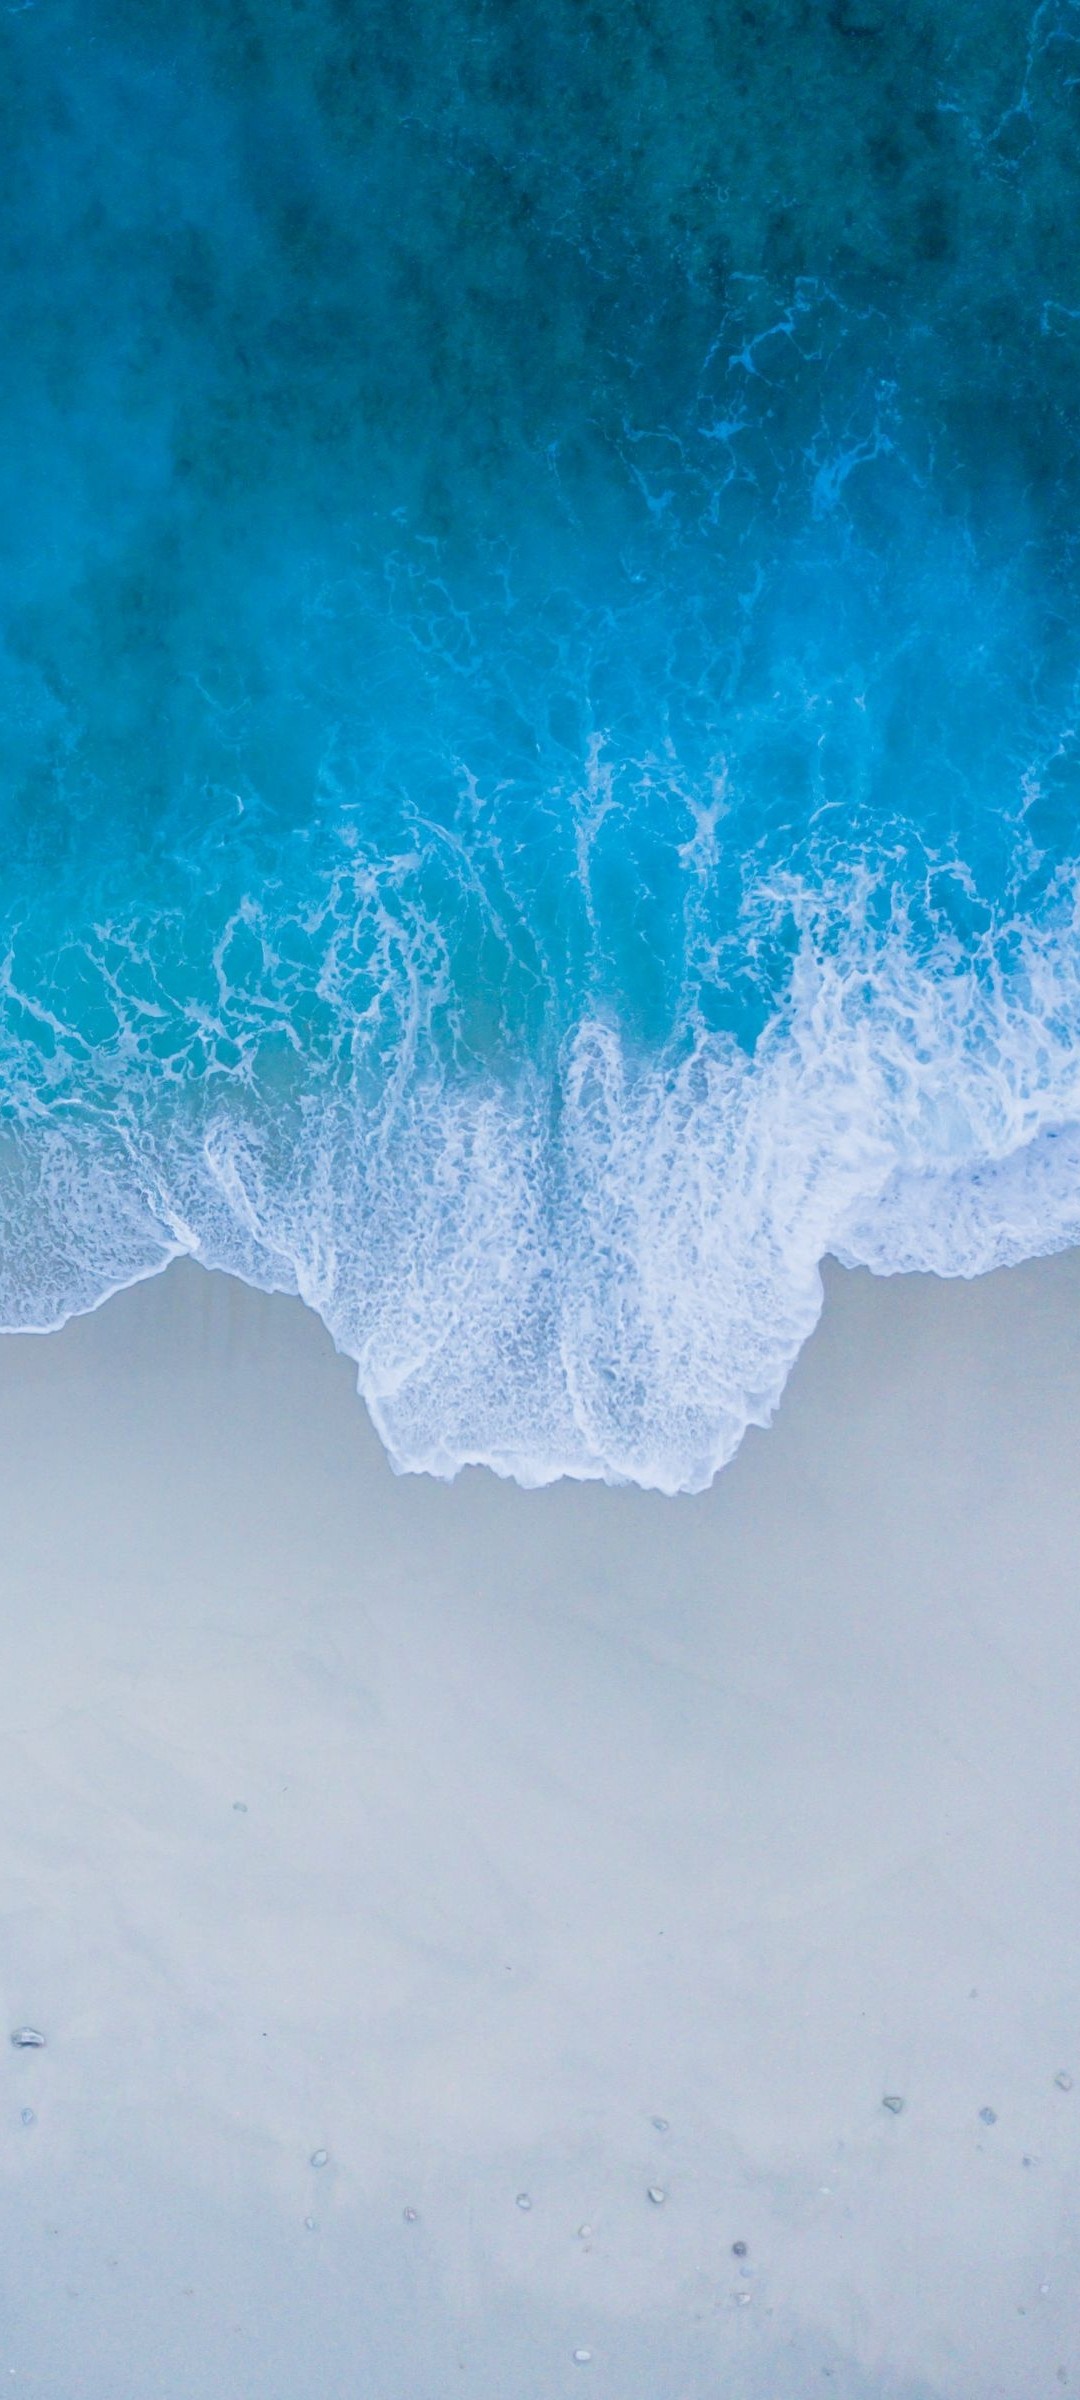 Mang vẻ đẹp của biển vào màn hình điện thoại của bạn với hình nền Sea wave đẹp mắt này. Được chụp tại một trong những bãi biển đẹp nhất trên thế giới, hình nền này chắc chắn sẽ làm cho bạn nhớ đến kỳ nghỉ của mình.